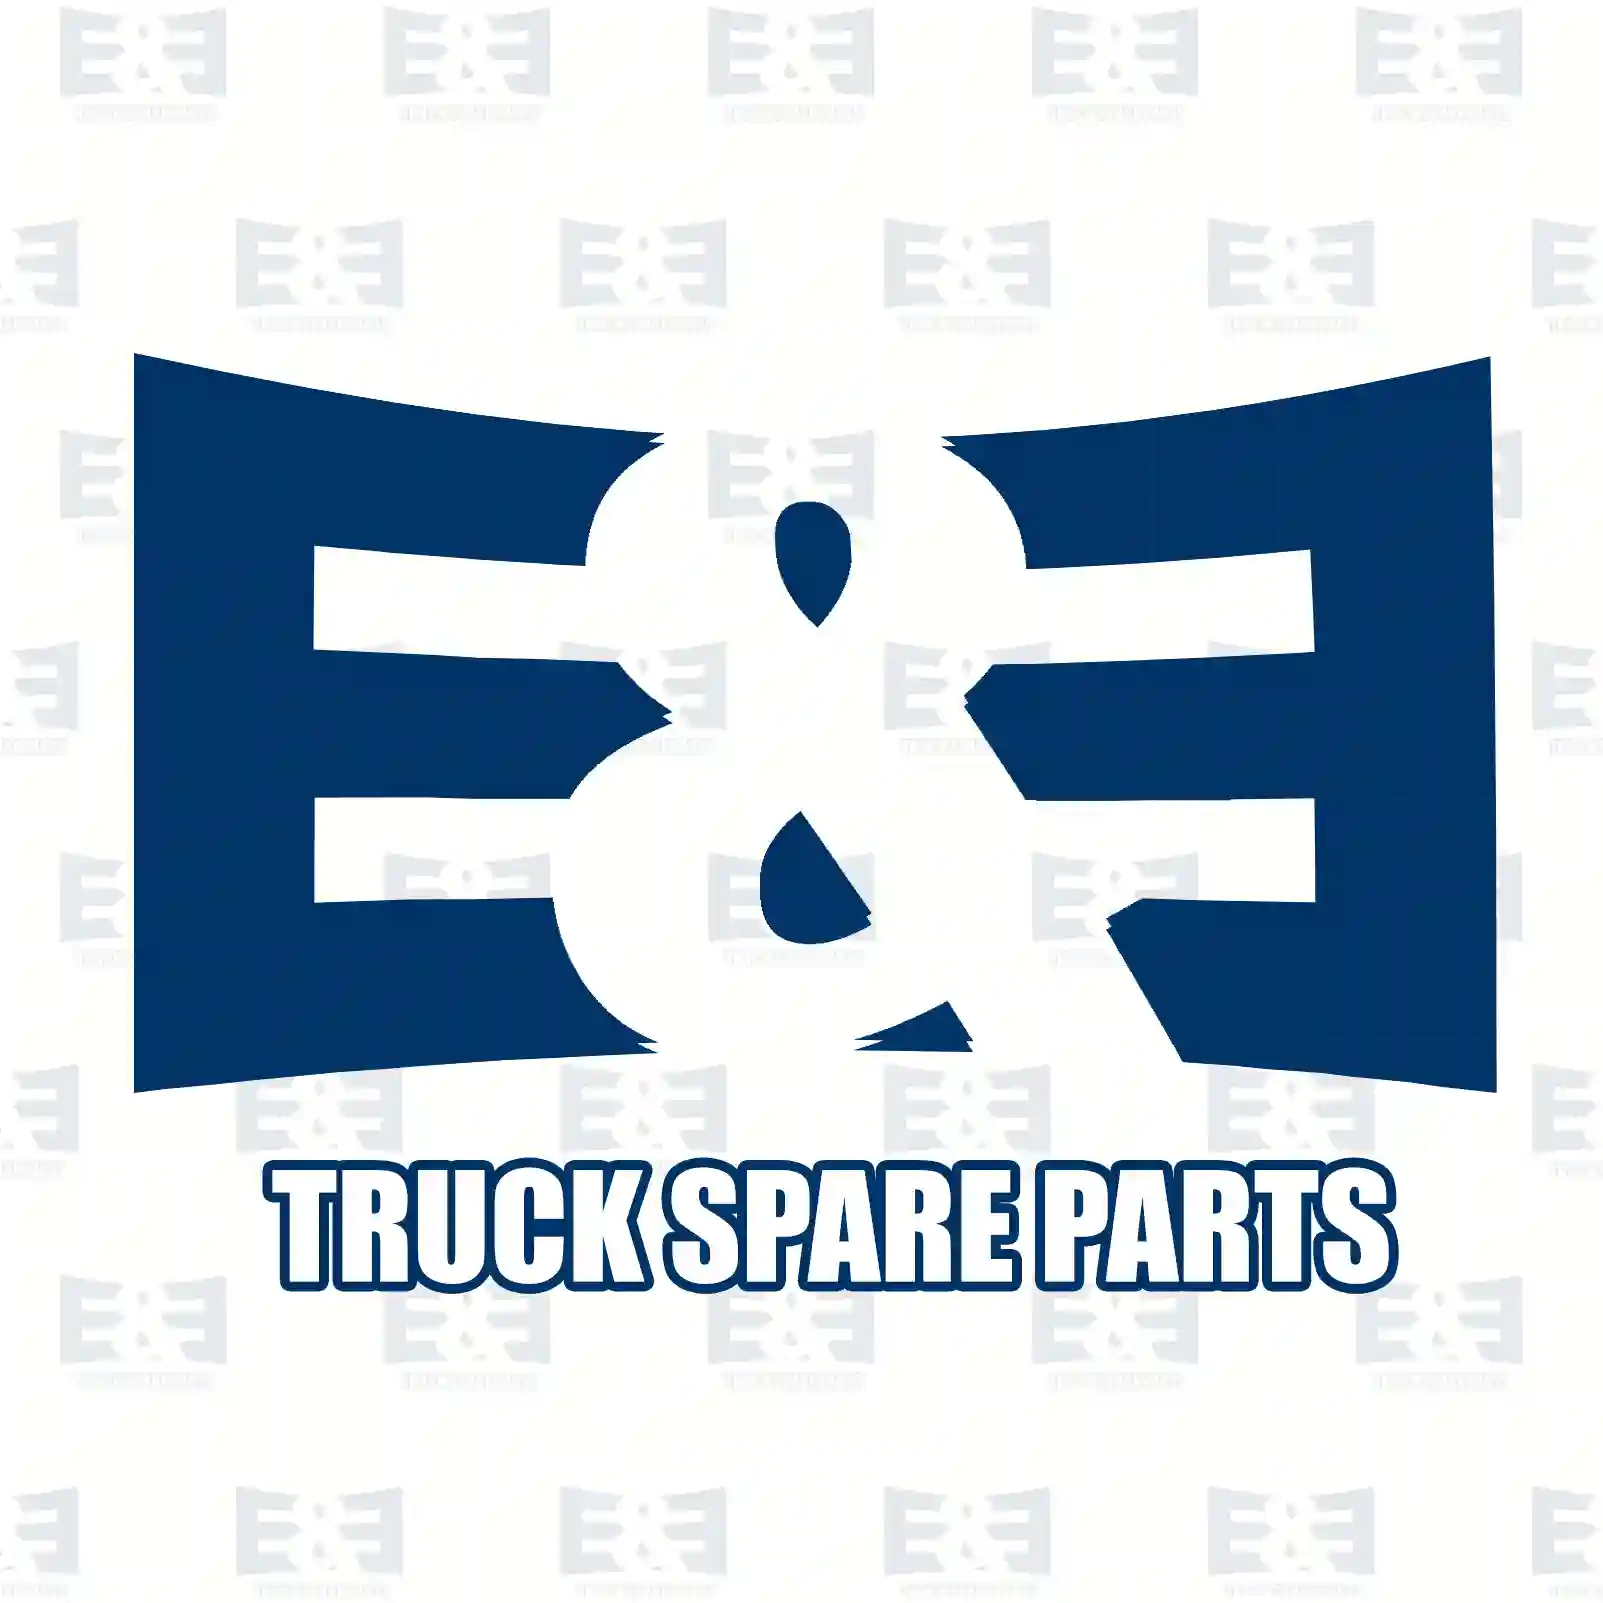 Brake disc, 2E2294852, 81508030042, 81508030053, , , , , , , , ||  2E2294852 E&E Truck Spare Parts | Truck Spare Parts, Auotomotive Spare Parts Brake disc, 2E2294852, 81508030042, 81508030053, , , , , , , , ||  2E2294852 E&E Truck Spare Parts | Truck Spare Parts, Auotomotive Spare Parts